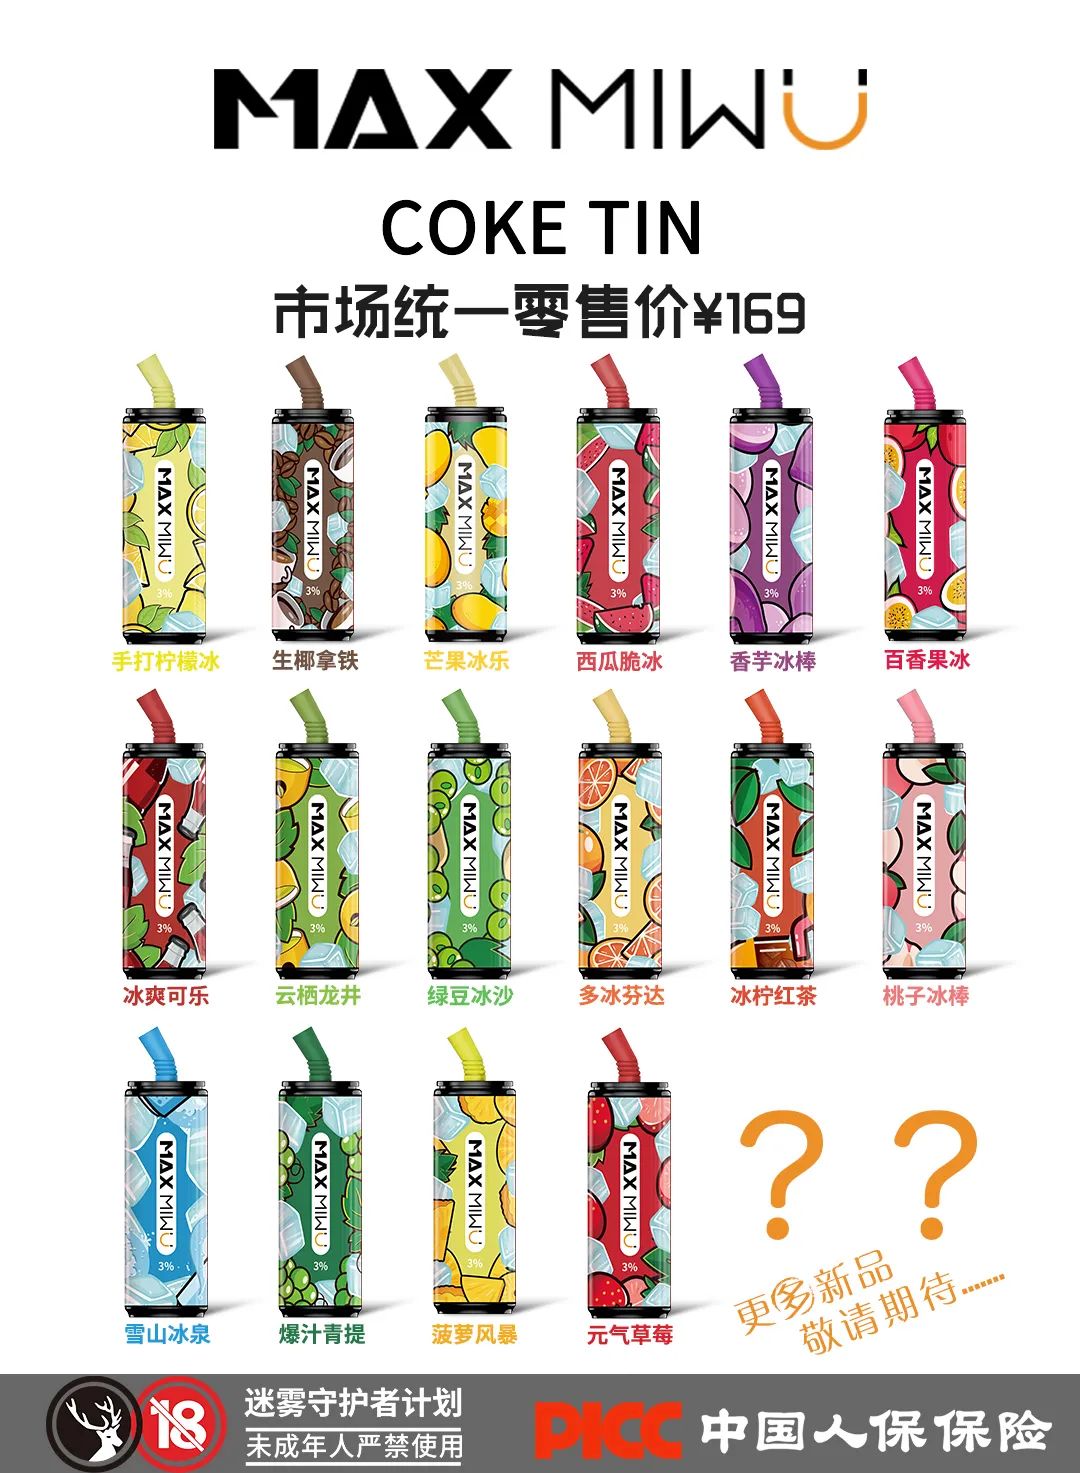 max迷雾的可乐罐哪种口味比较好抽?